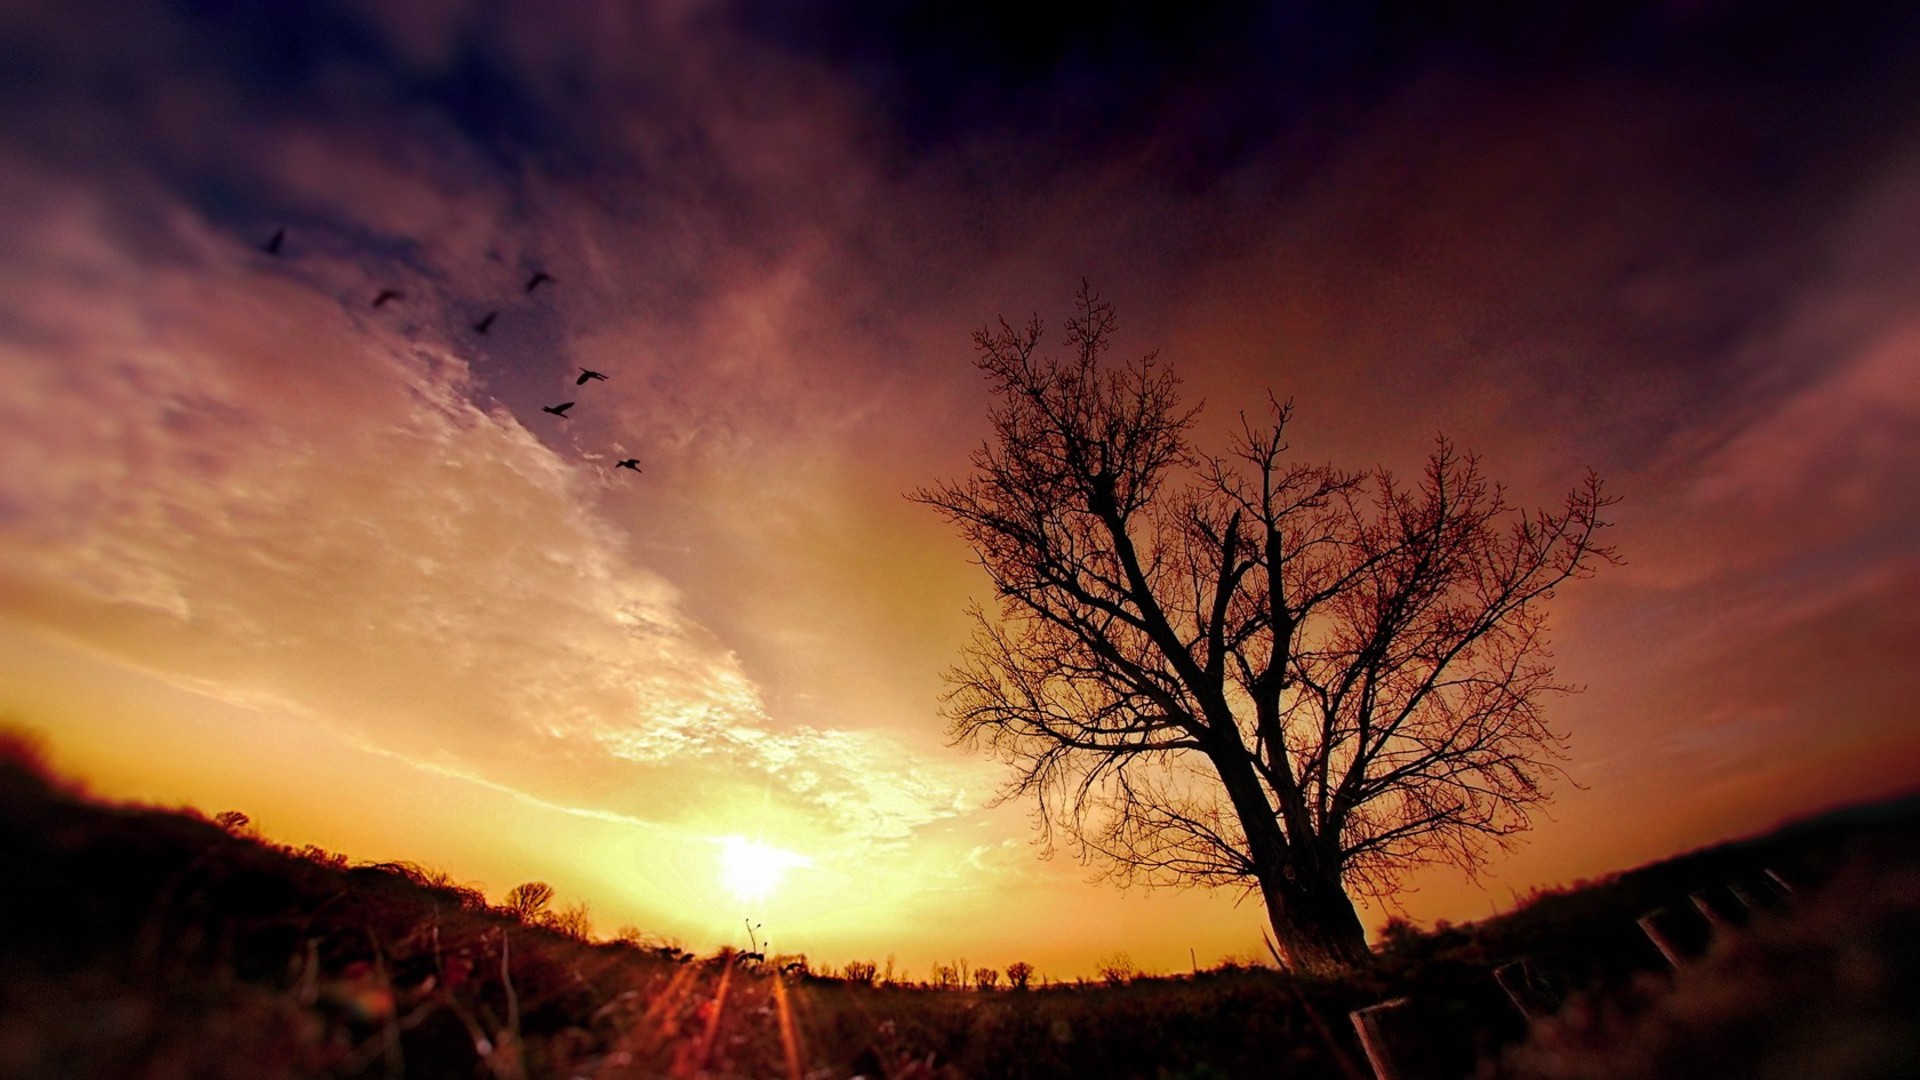 Скачать обои бесплатно Птицы, Дерево, Земля/природа, Закат Солнца картинка на рабочий стол ПК